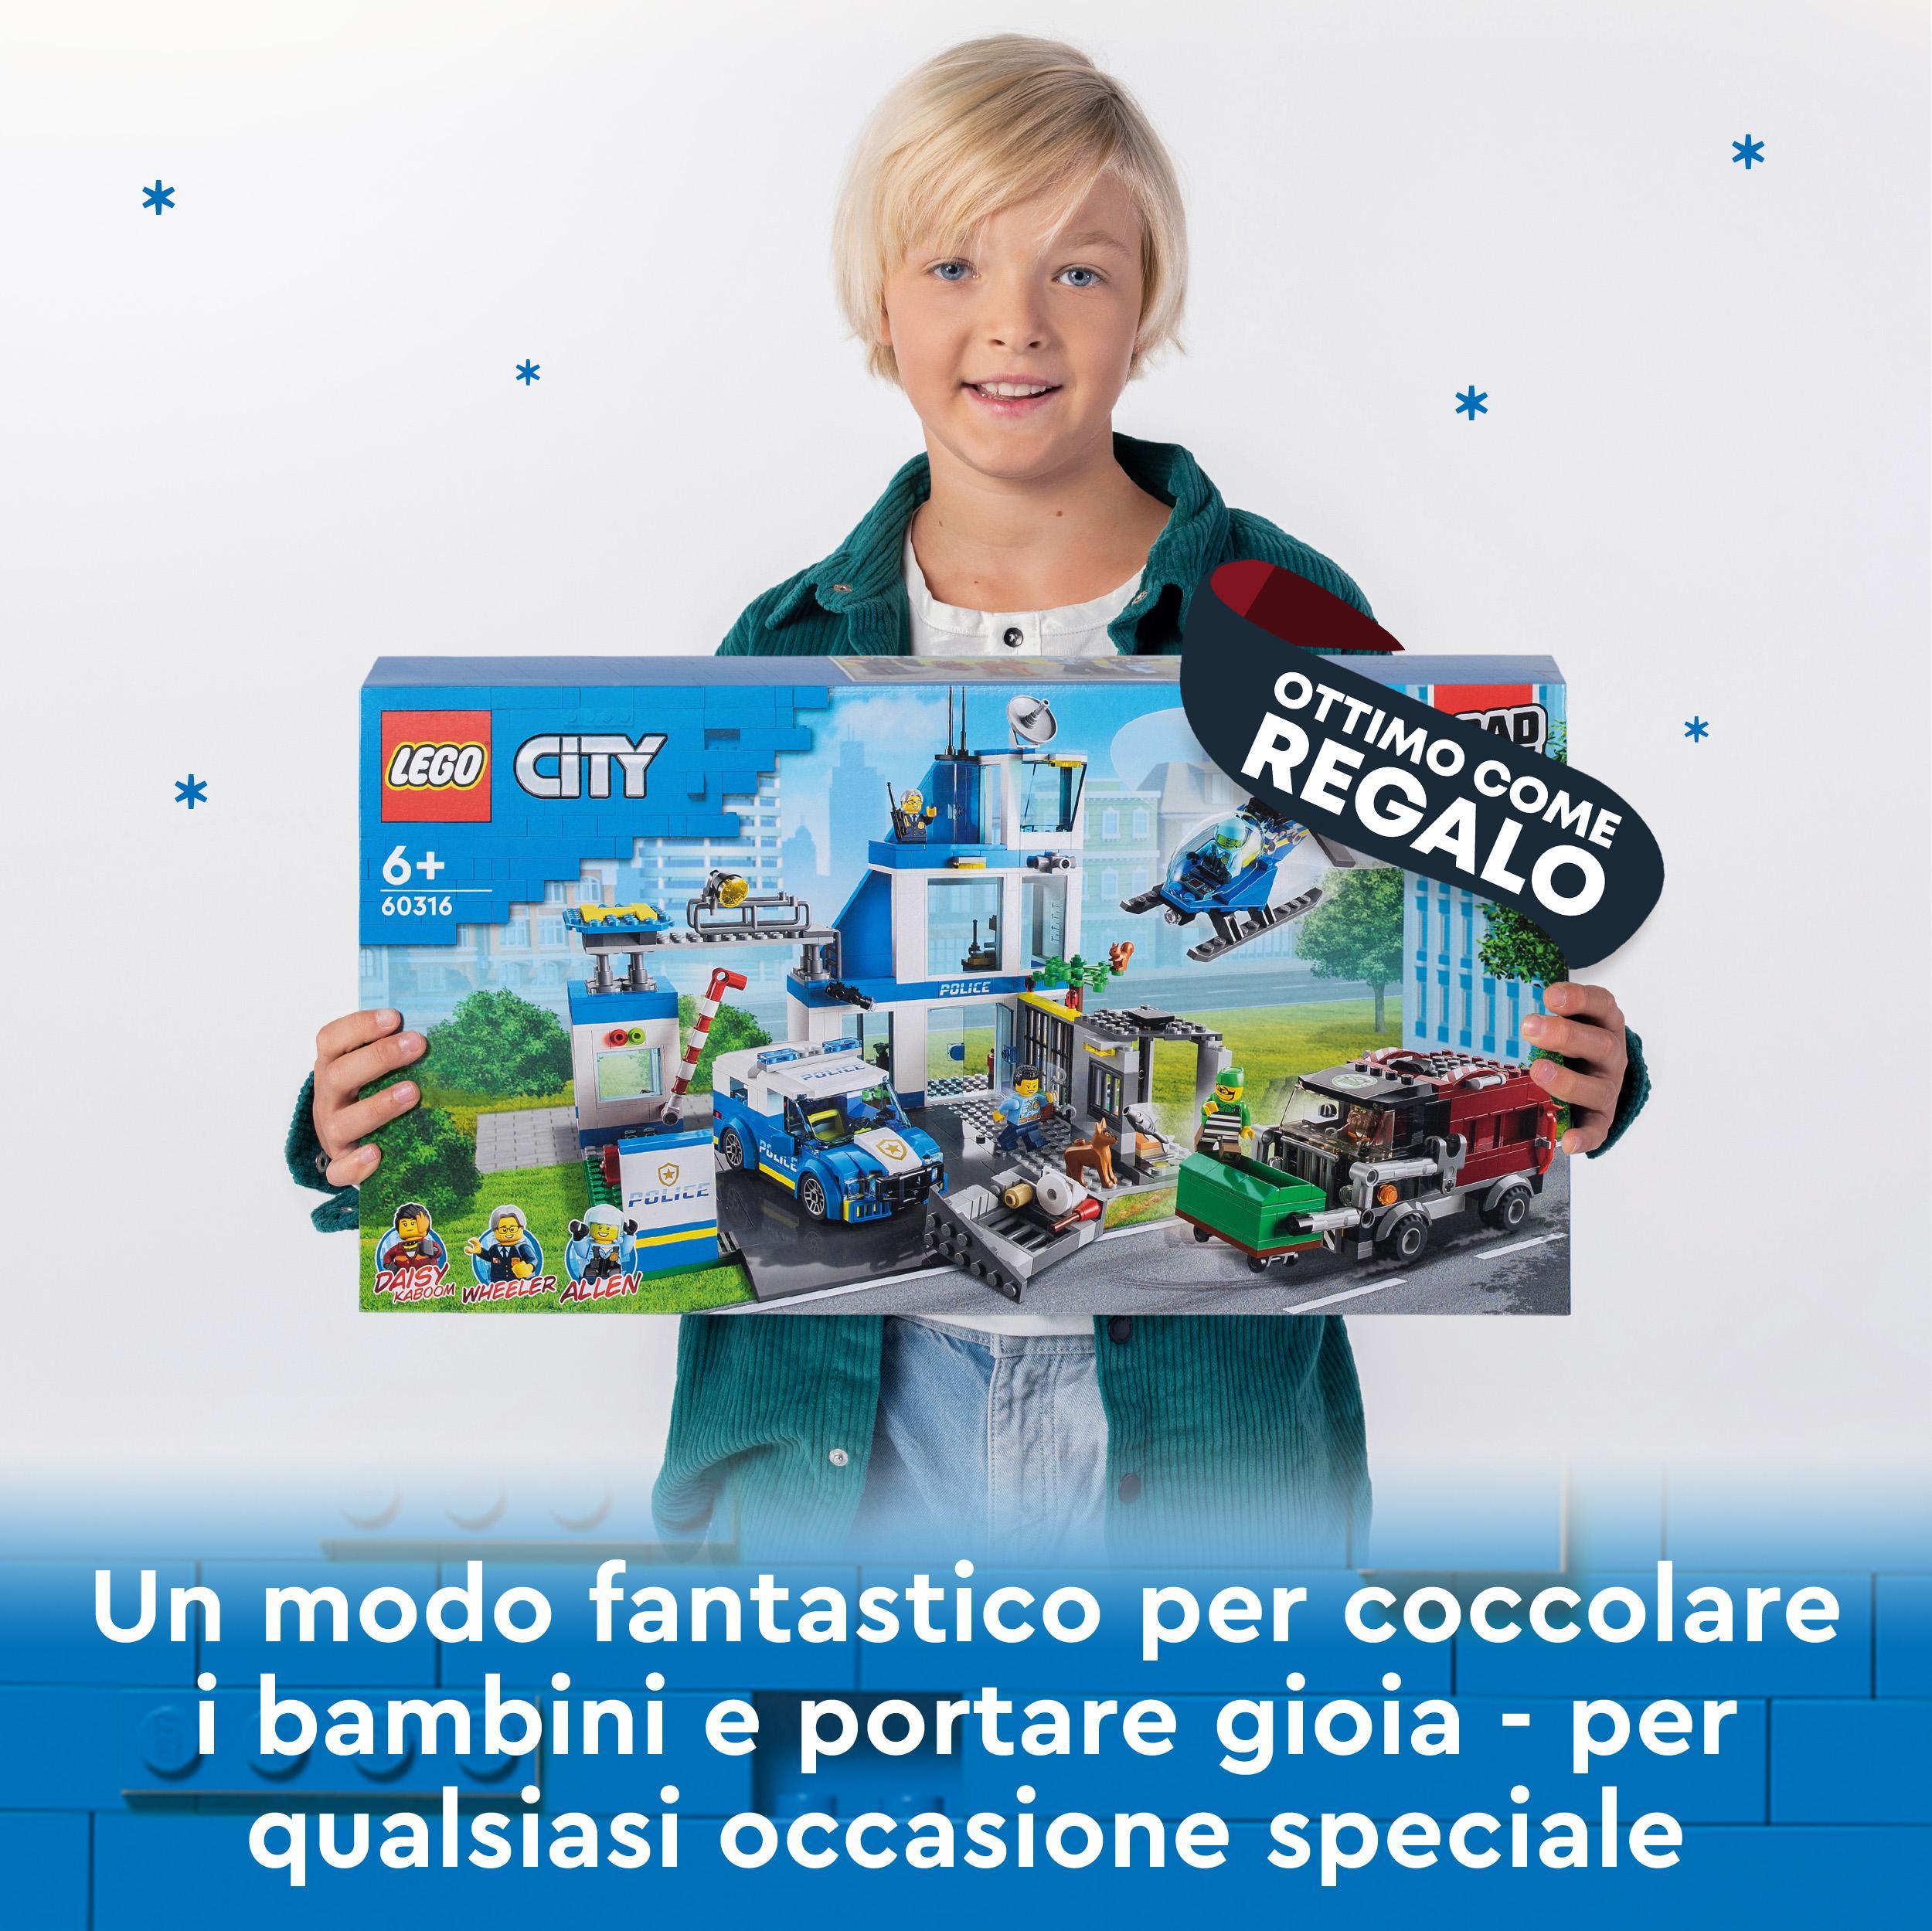 Lego city police stazione di polizia, con camion della spazzatura ed elicottero giocattolo, per bambini di 6+ anni, 60316 - LEGO CITY, Lego